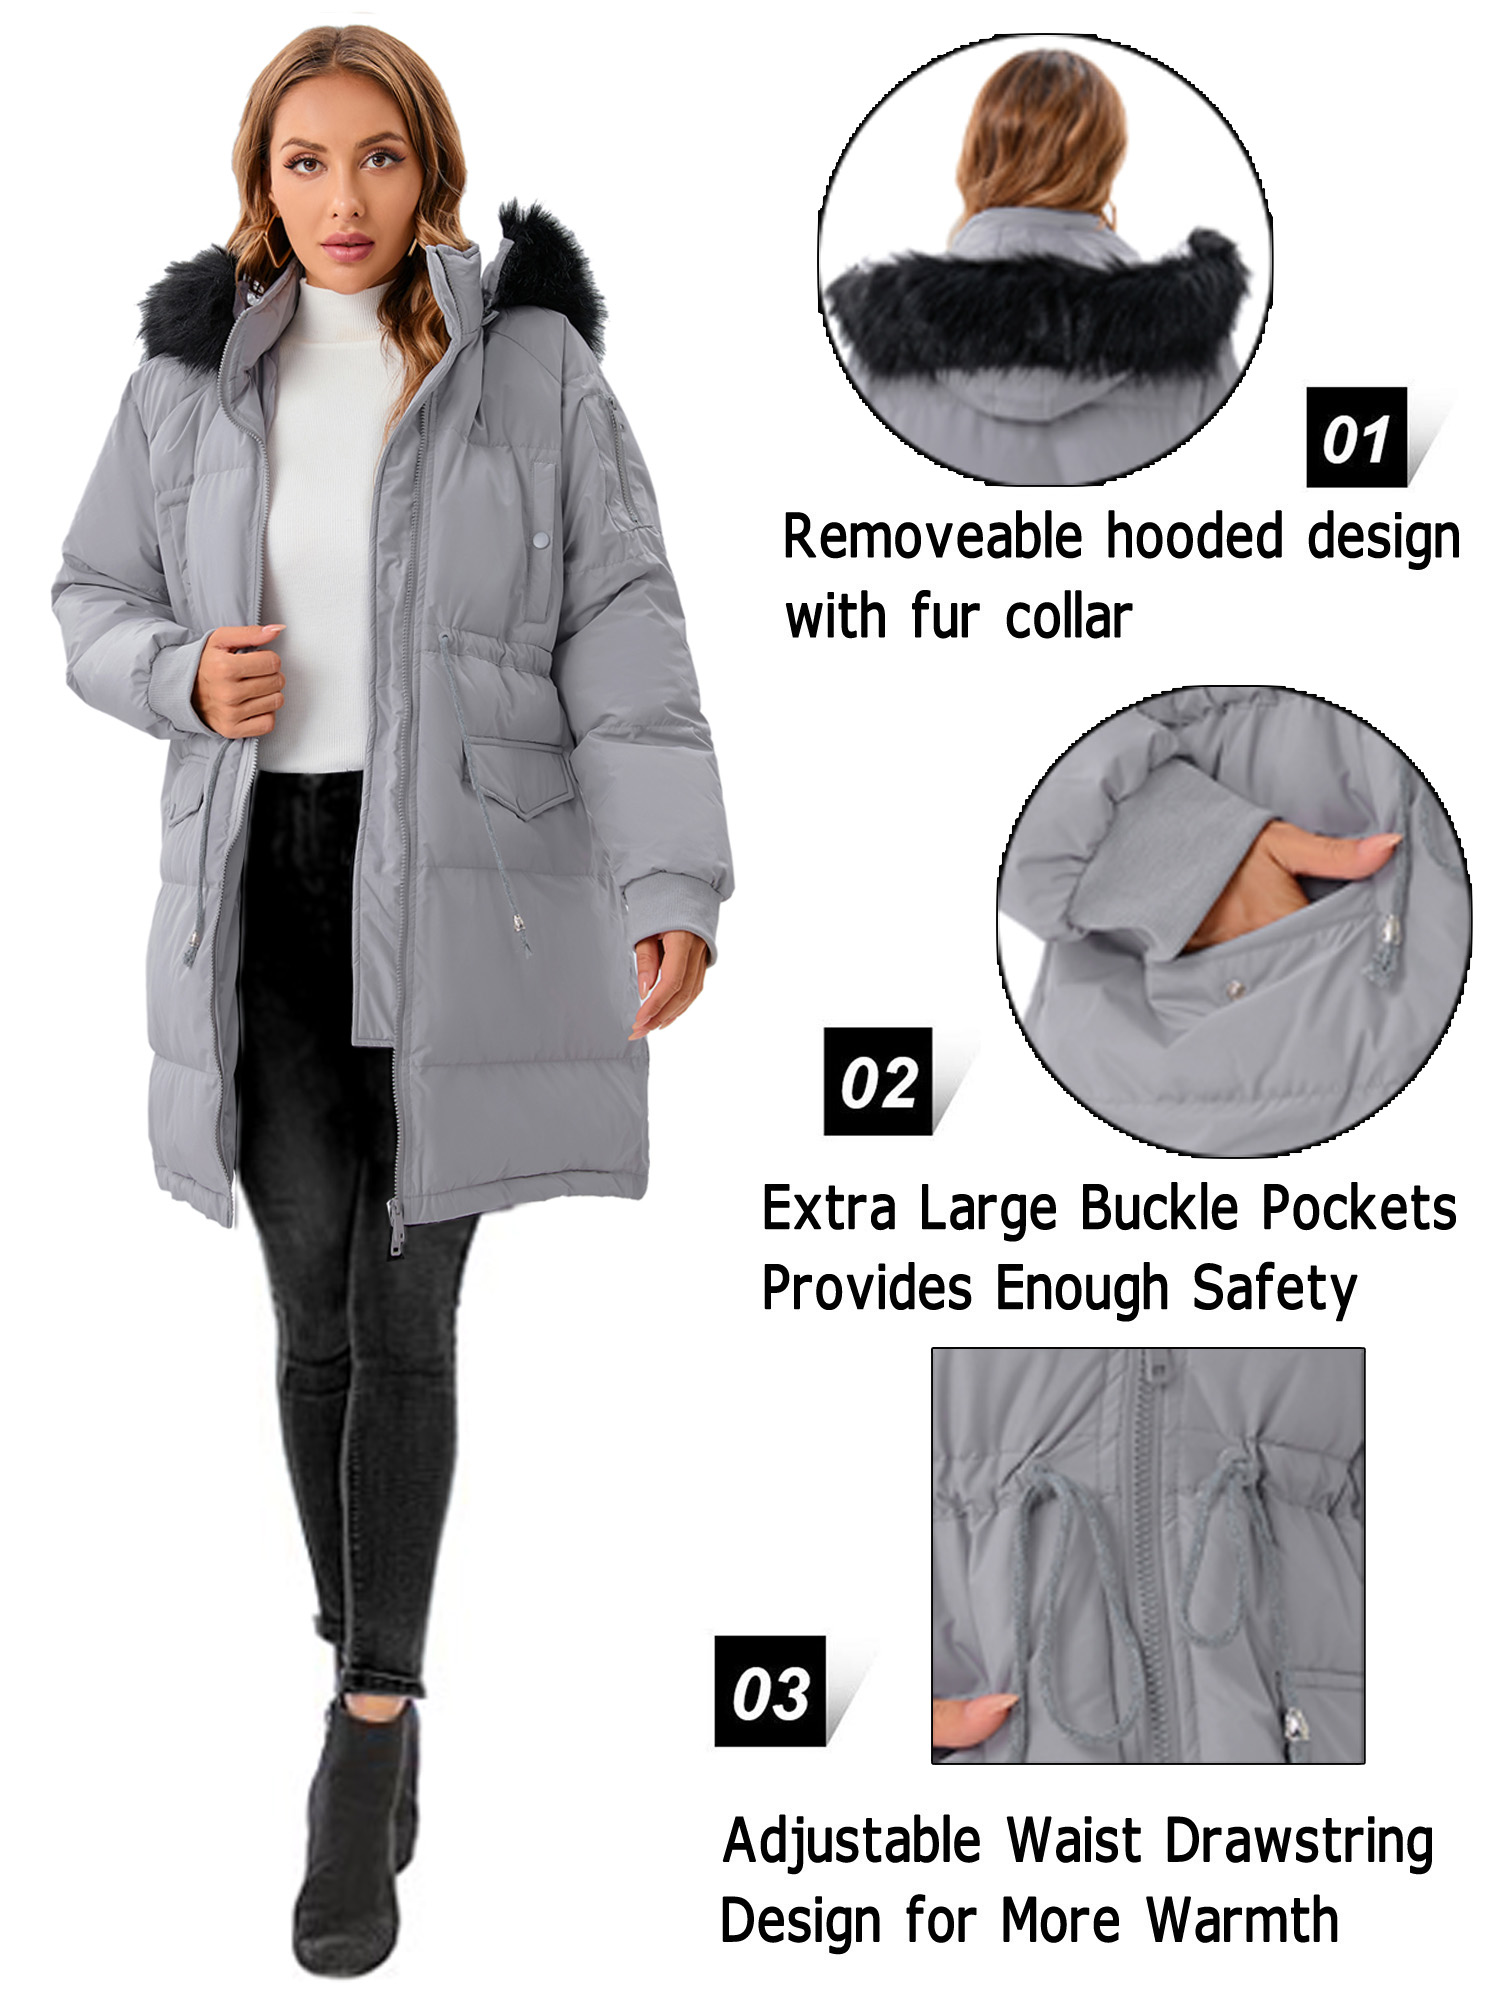 LELINTA Women's Winter Long Down Jacket Thickened Outwear Warm Puffer Fur Trim Hooded Coat Waterproof Rain Zip Parka, Black/ Camouflage - image 2 of 7